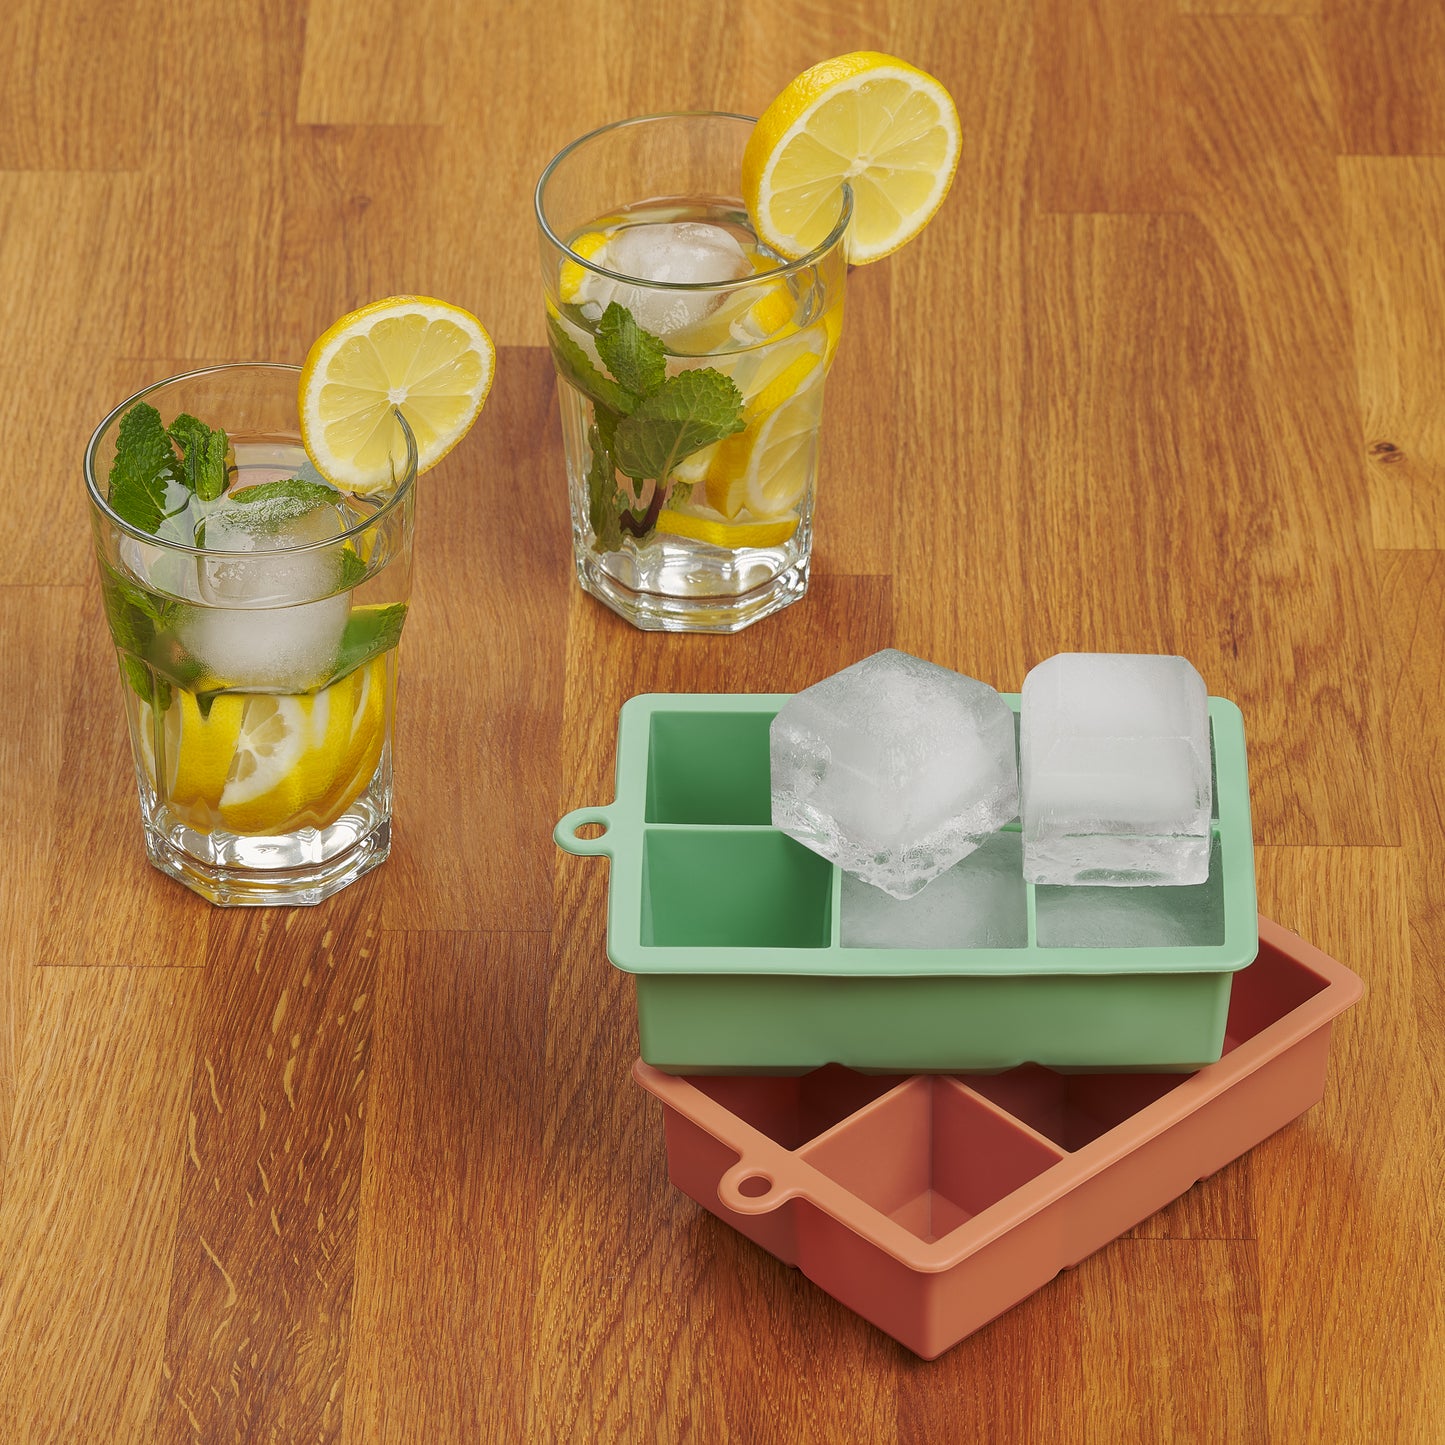 Getränkegläser mit Eiswürfeln neben leerer und voller roter Eiswürfelform auf Holztisch.